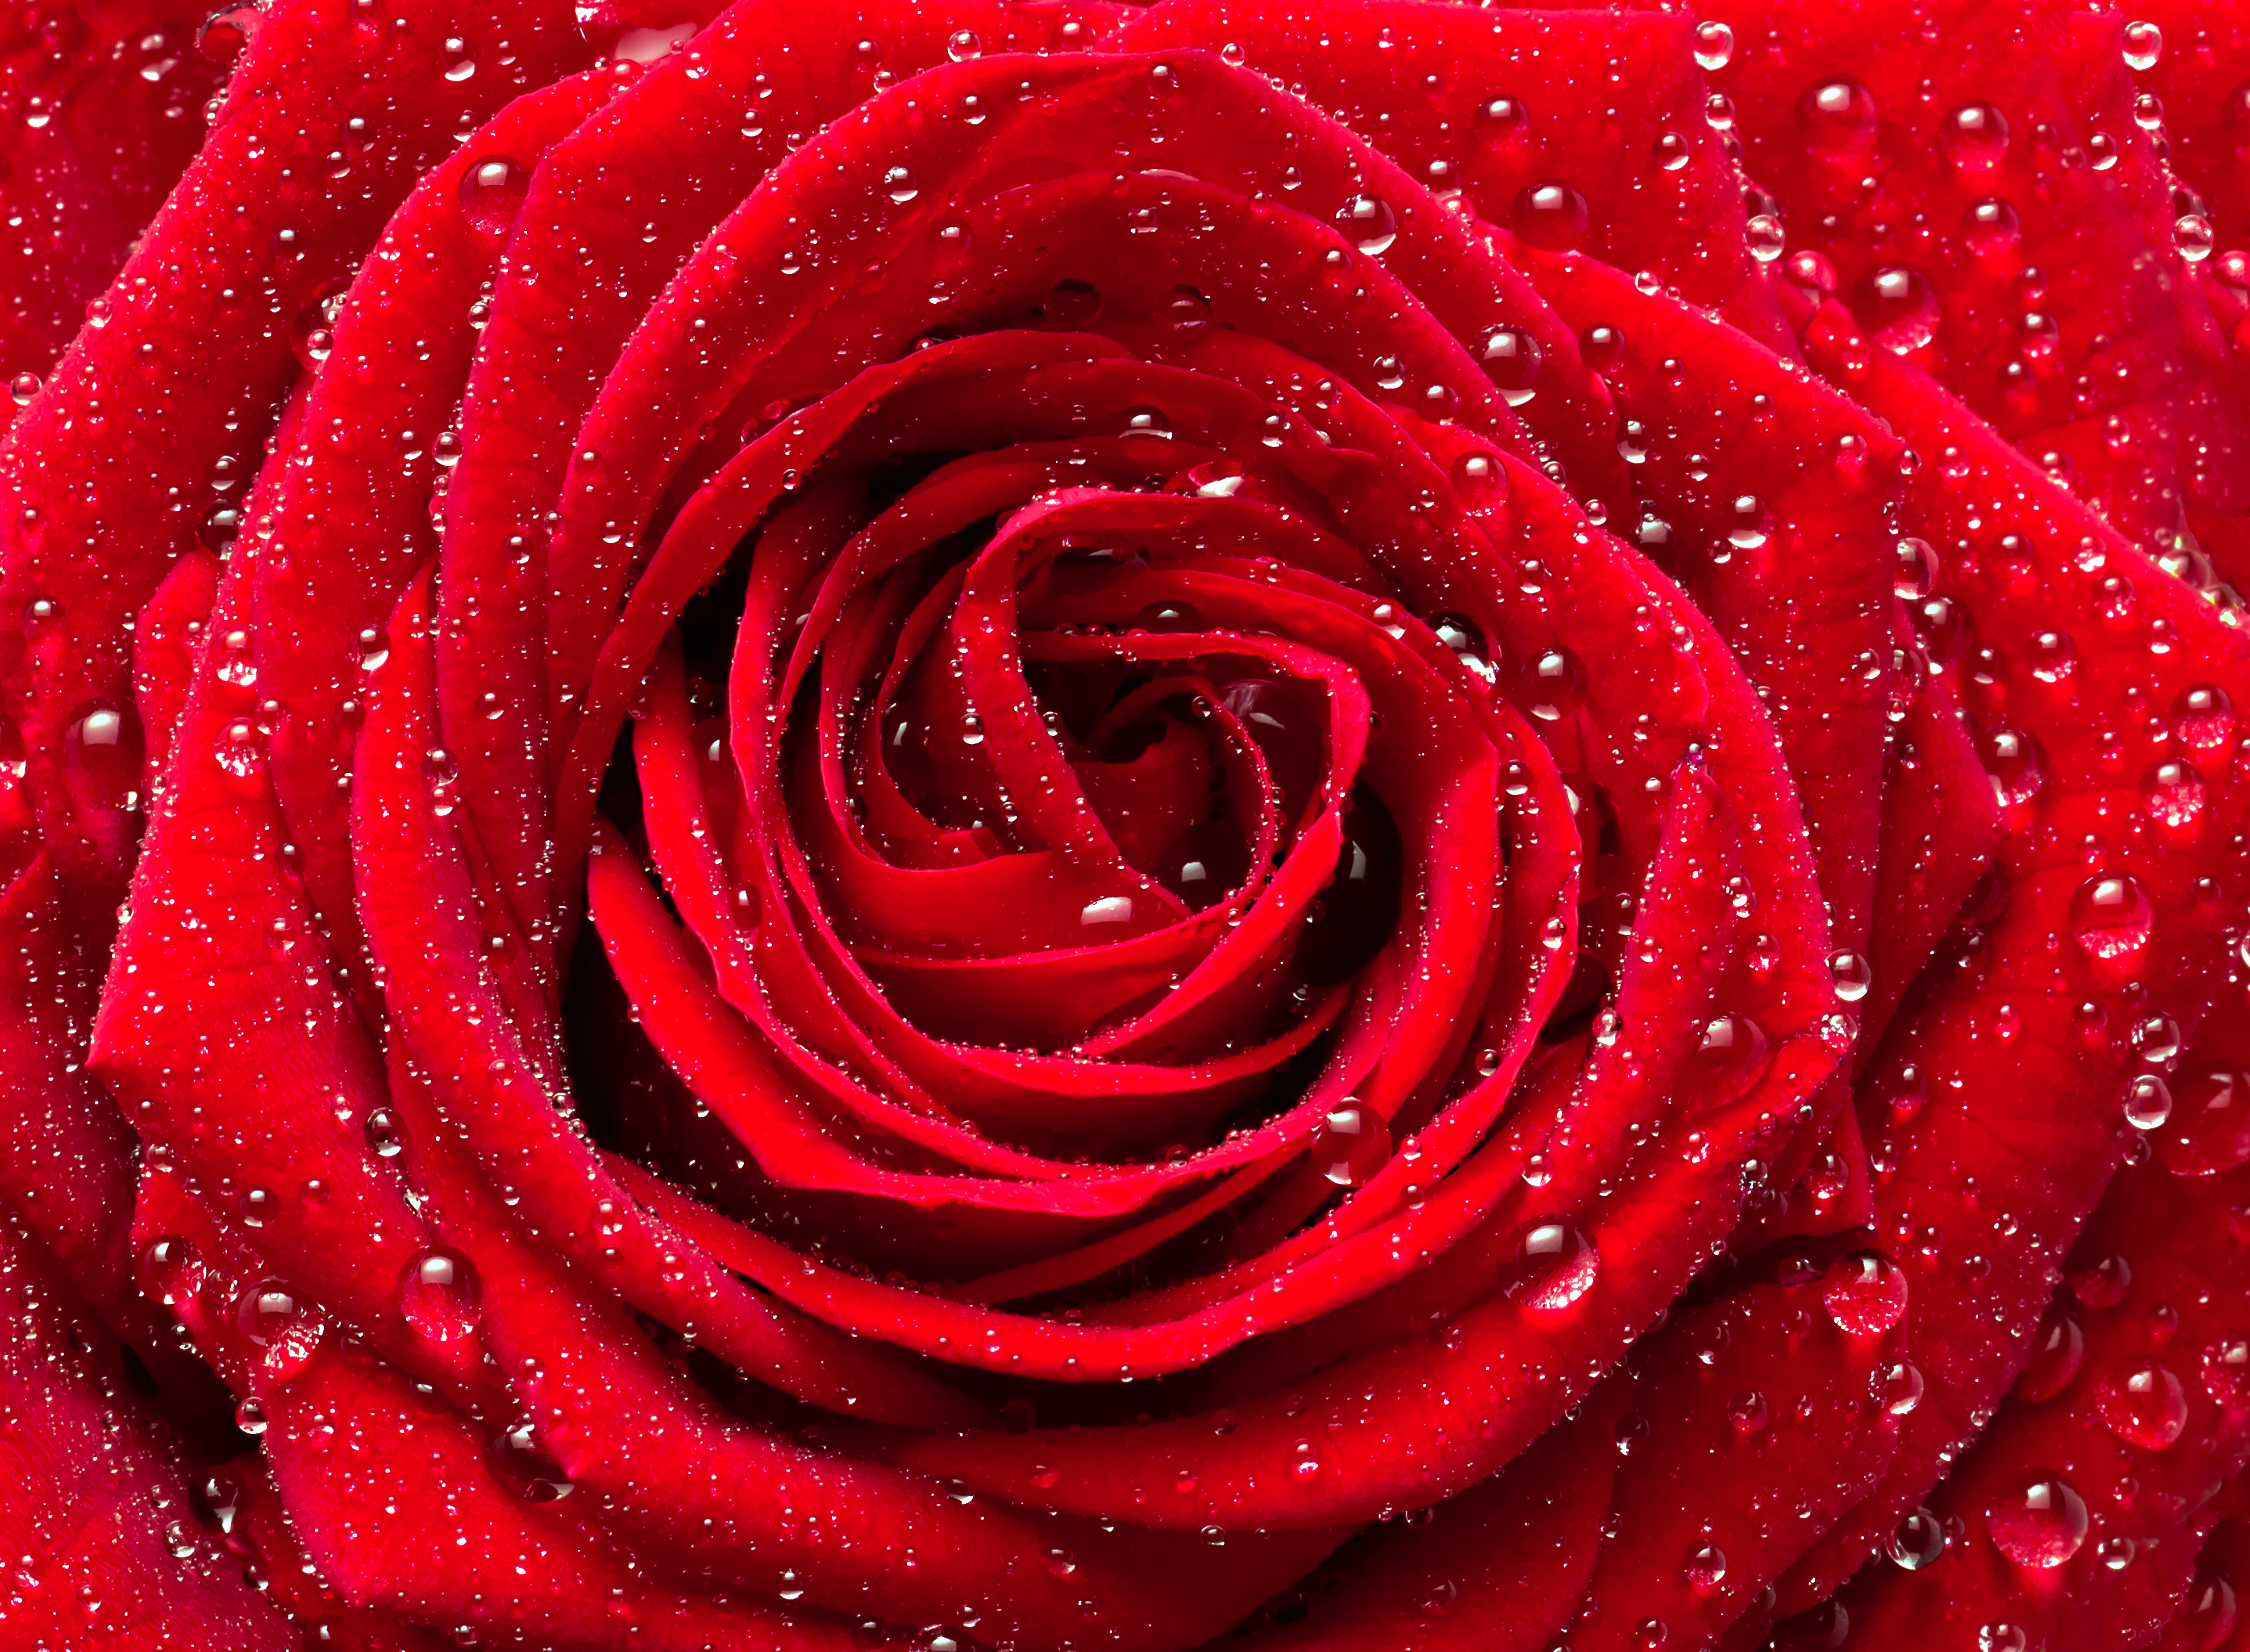 red rose wallpaper for desktop full size